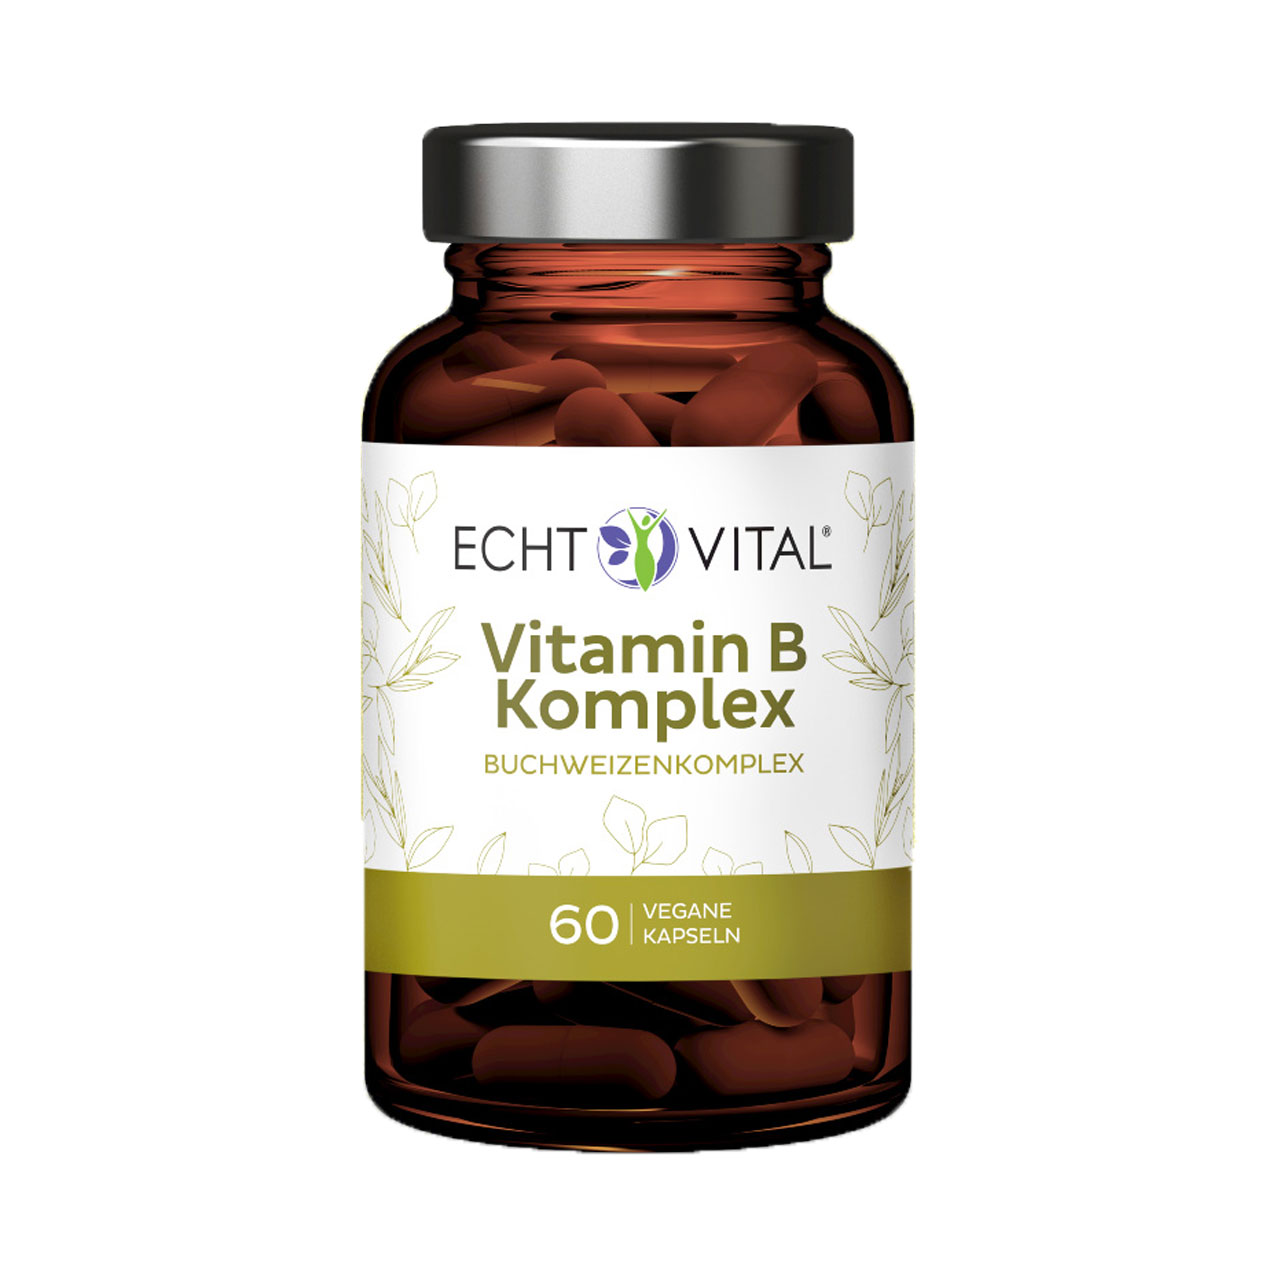 Vitamin B Komplex Kapseln von Echt Vital beinhaltet 60 vegane Kapseln